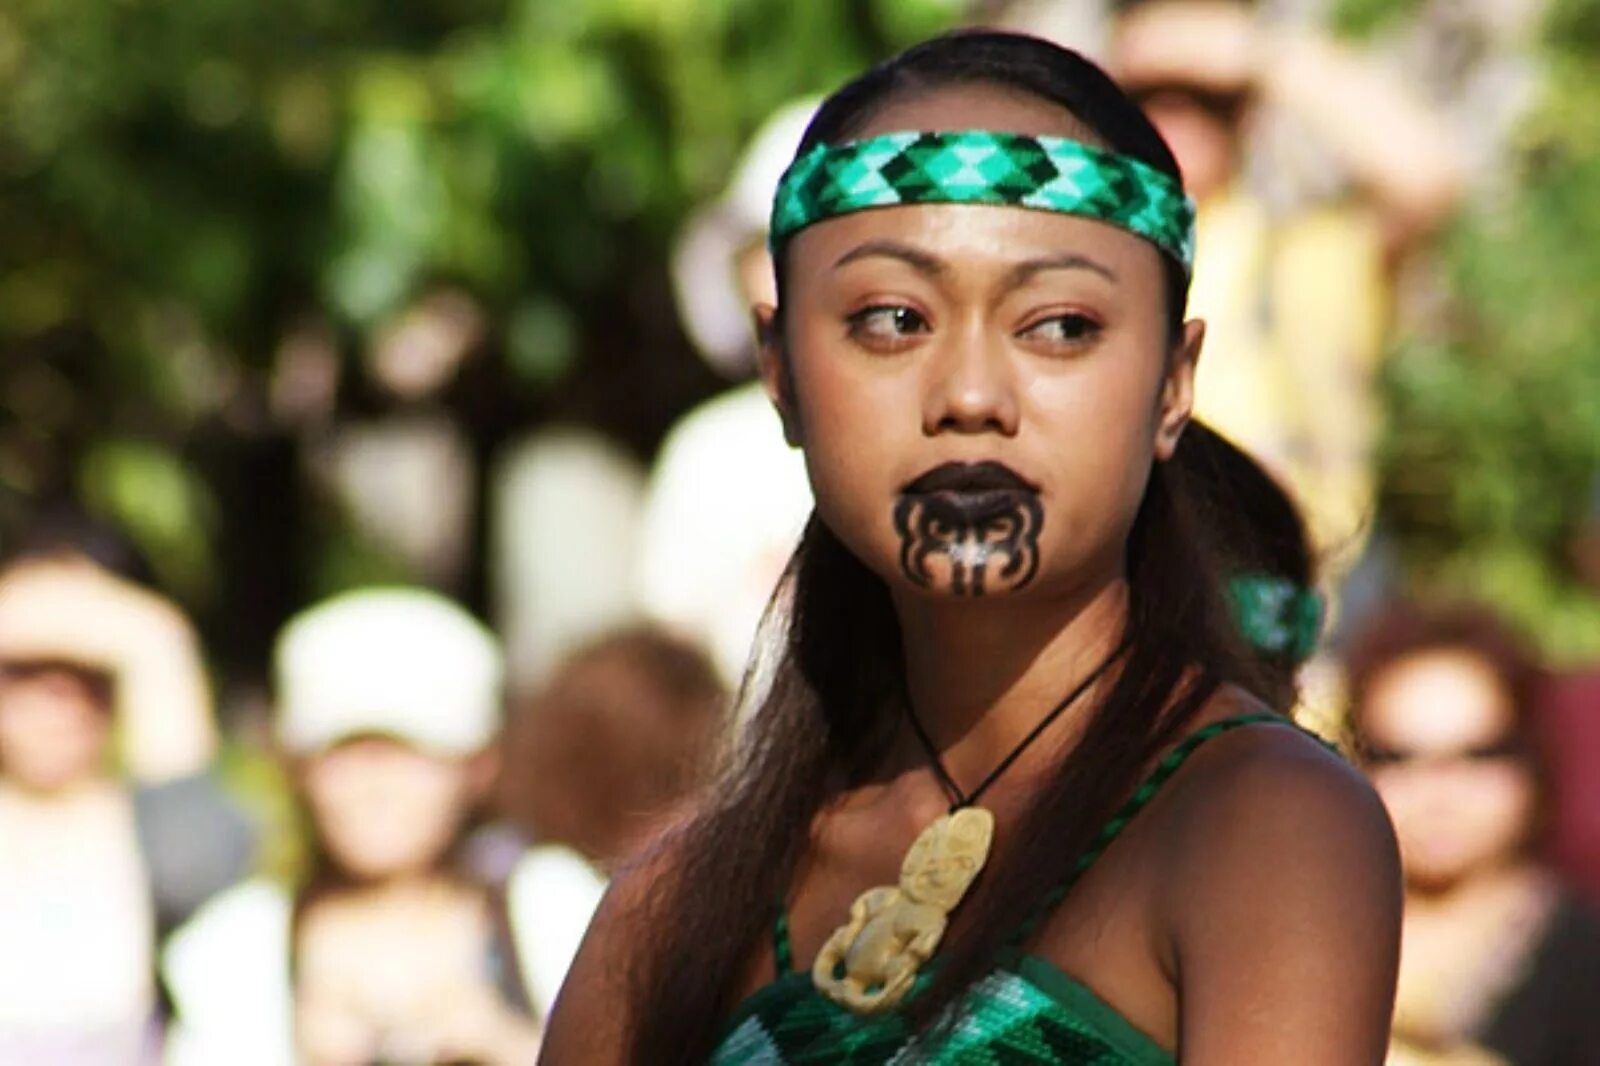 Tribe girl. Новозеландия Маори. Майори племя новая Зеландия. Маури племя в новой Зеландии. Новая Зеландия коренные жители Маори.